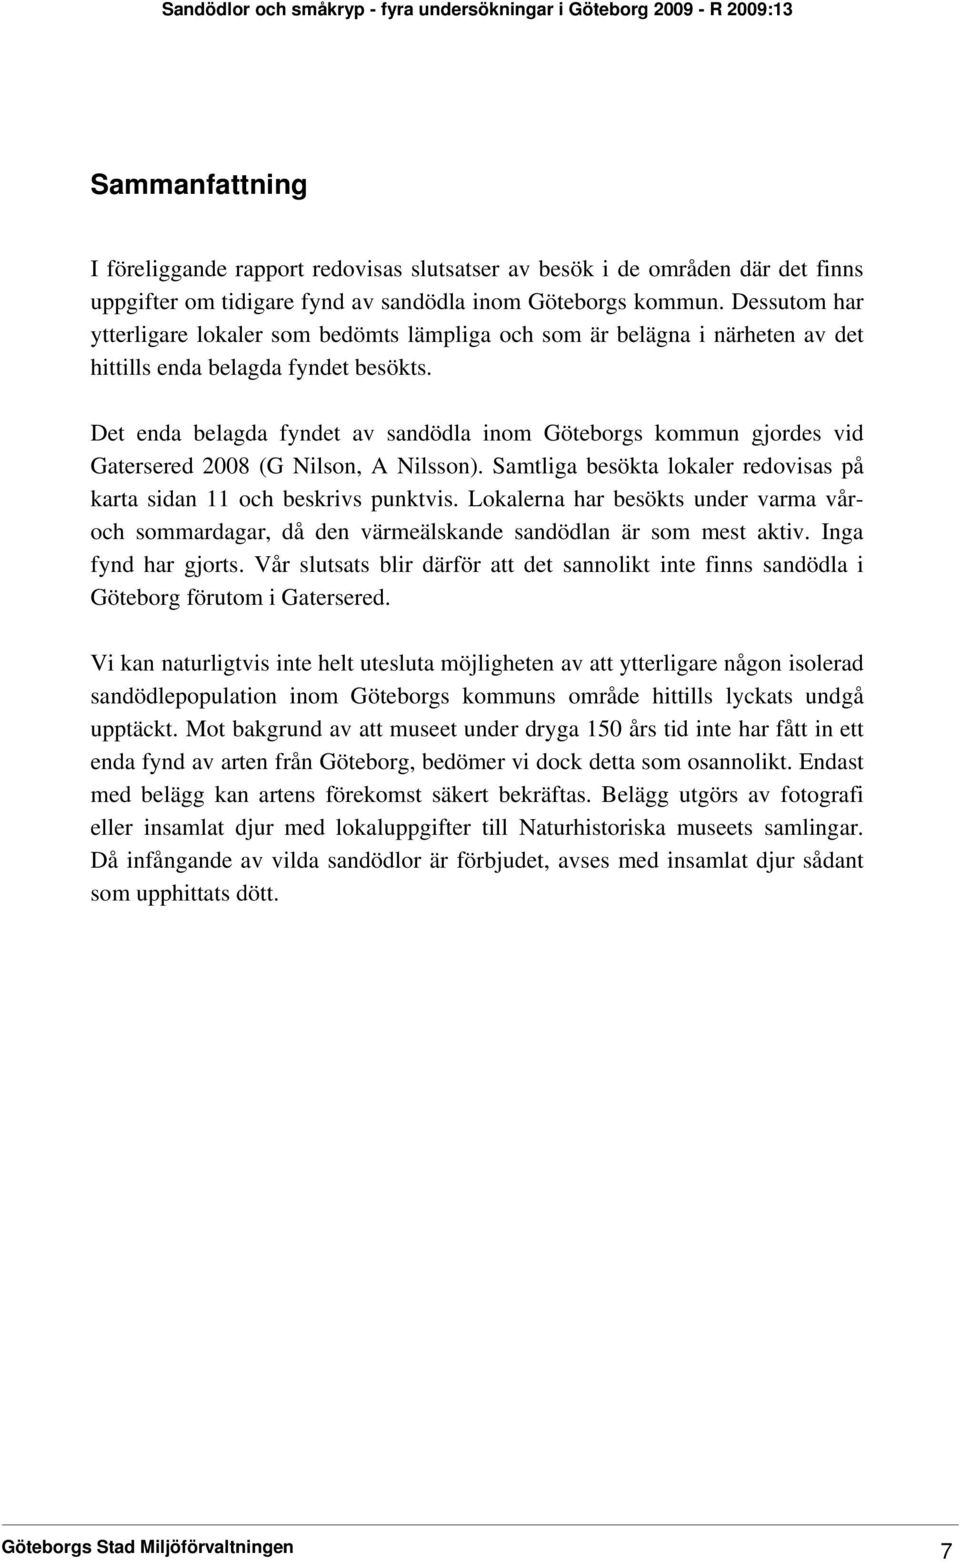 Det enda belagda fyndet av sandödla inom Göteborgs kommun gjordes vid Gatersered 2008 (G Nilson, A Nilsson). Samtliga besökta lokaler redovisas på karta sidan 11 och beskrivs punktvis.